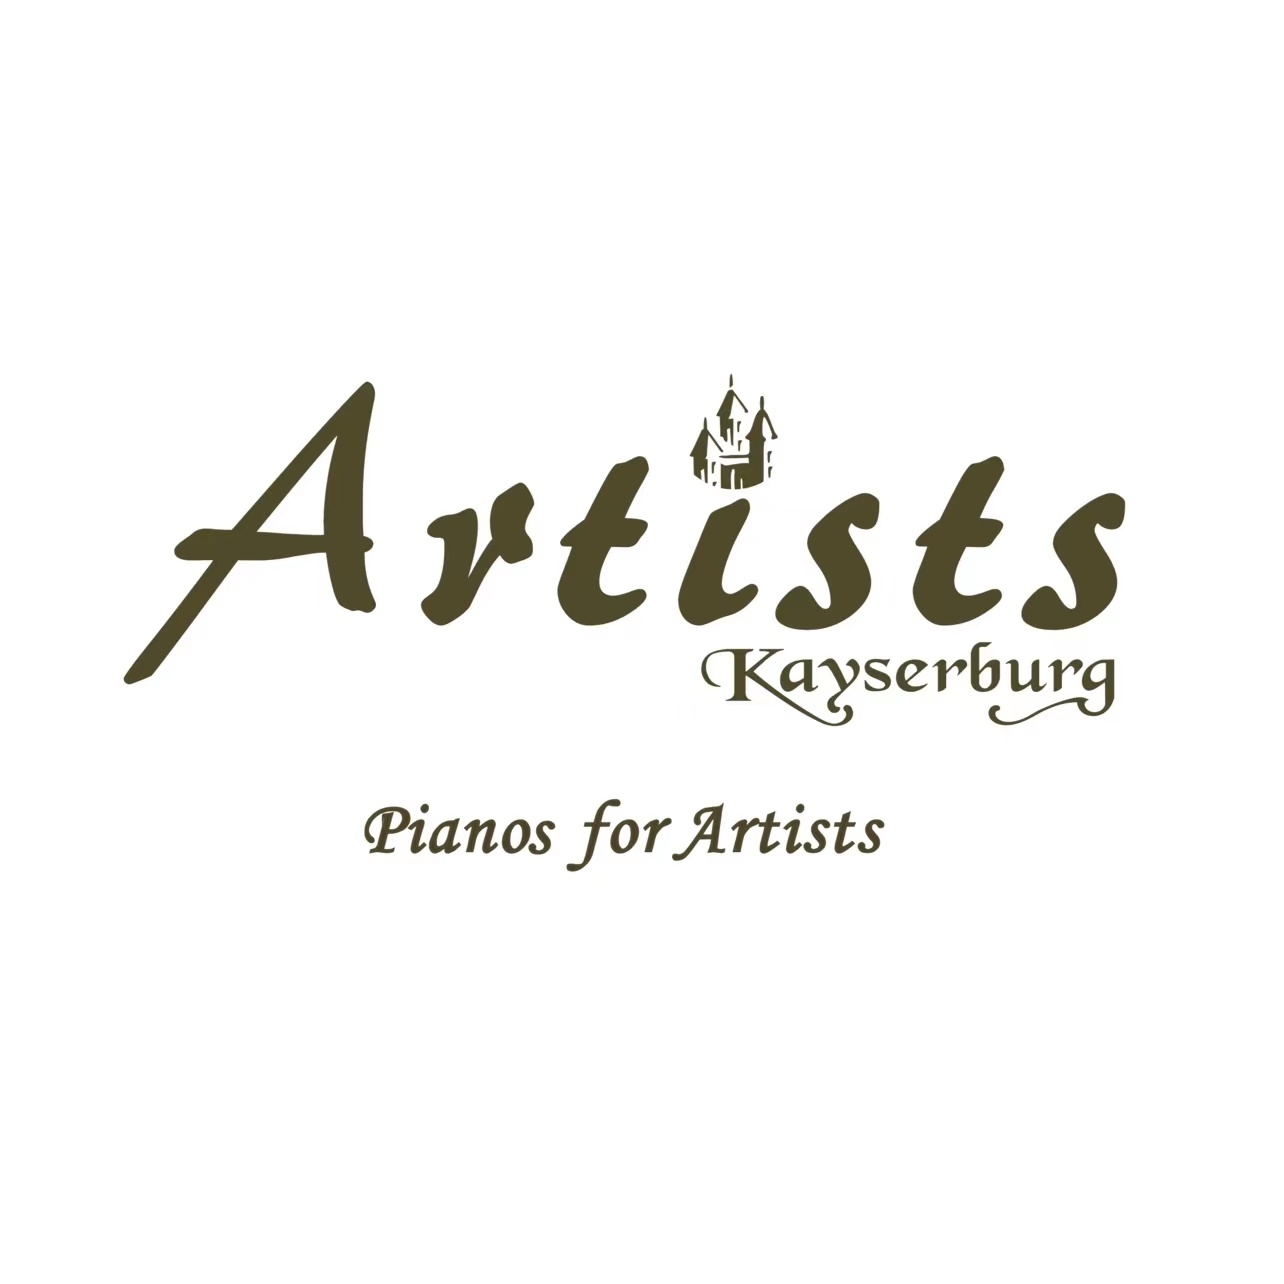 Kayserburg Artists Piano